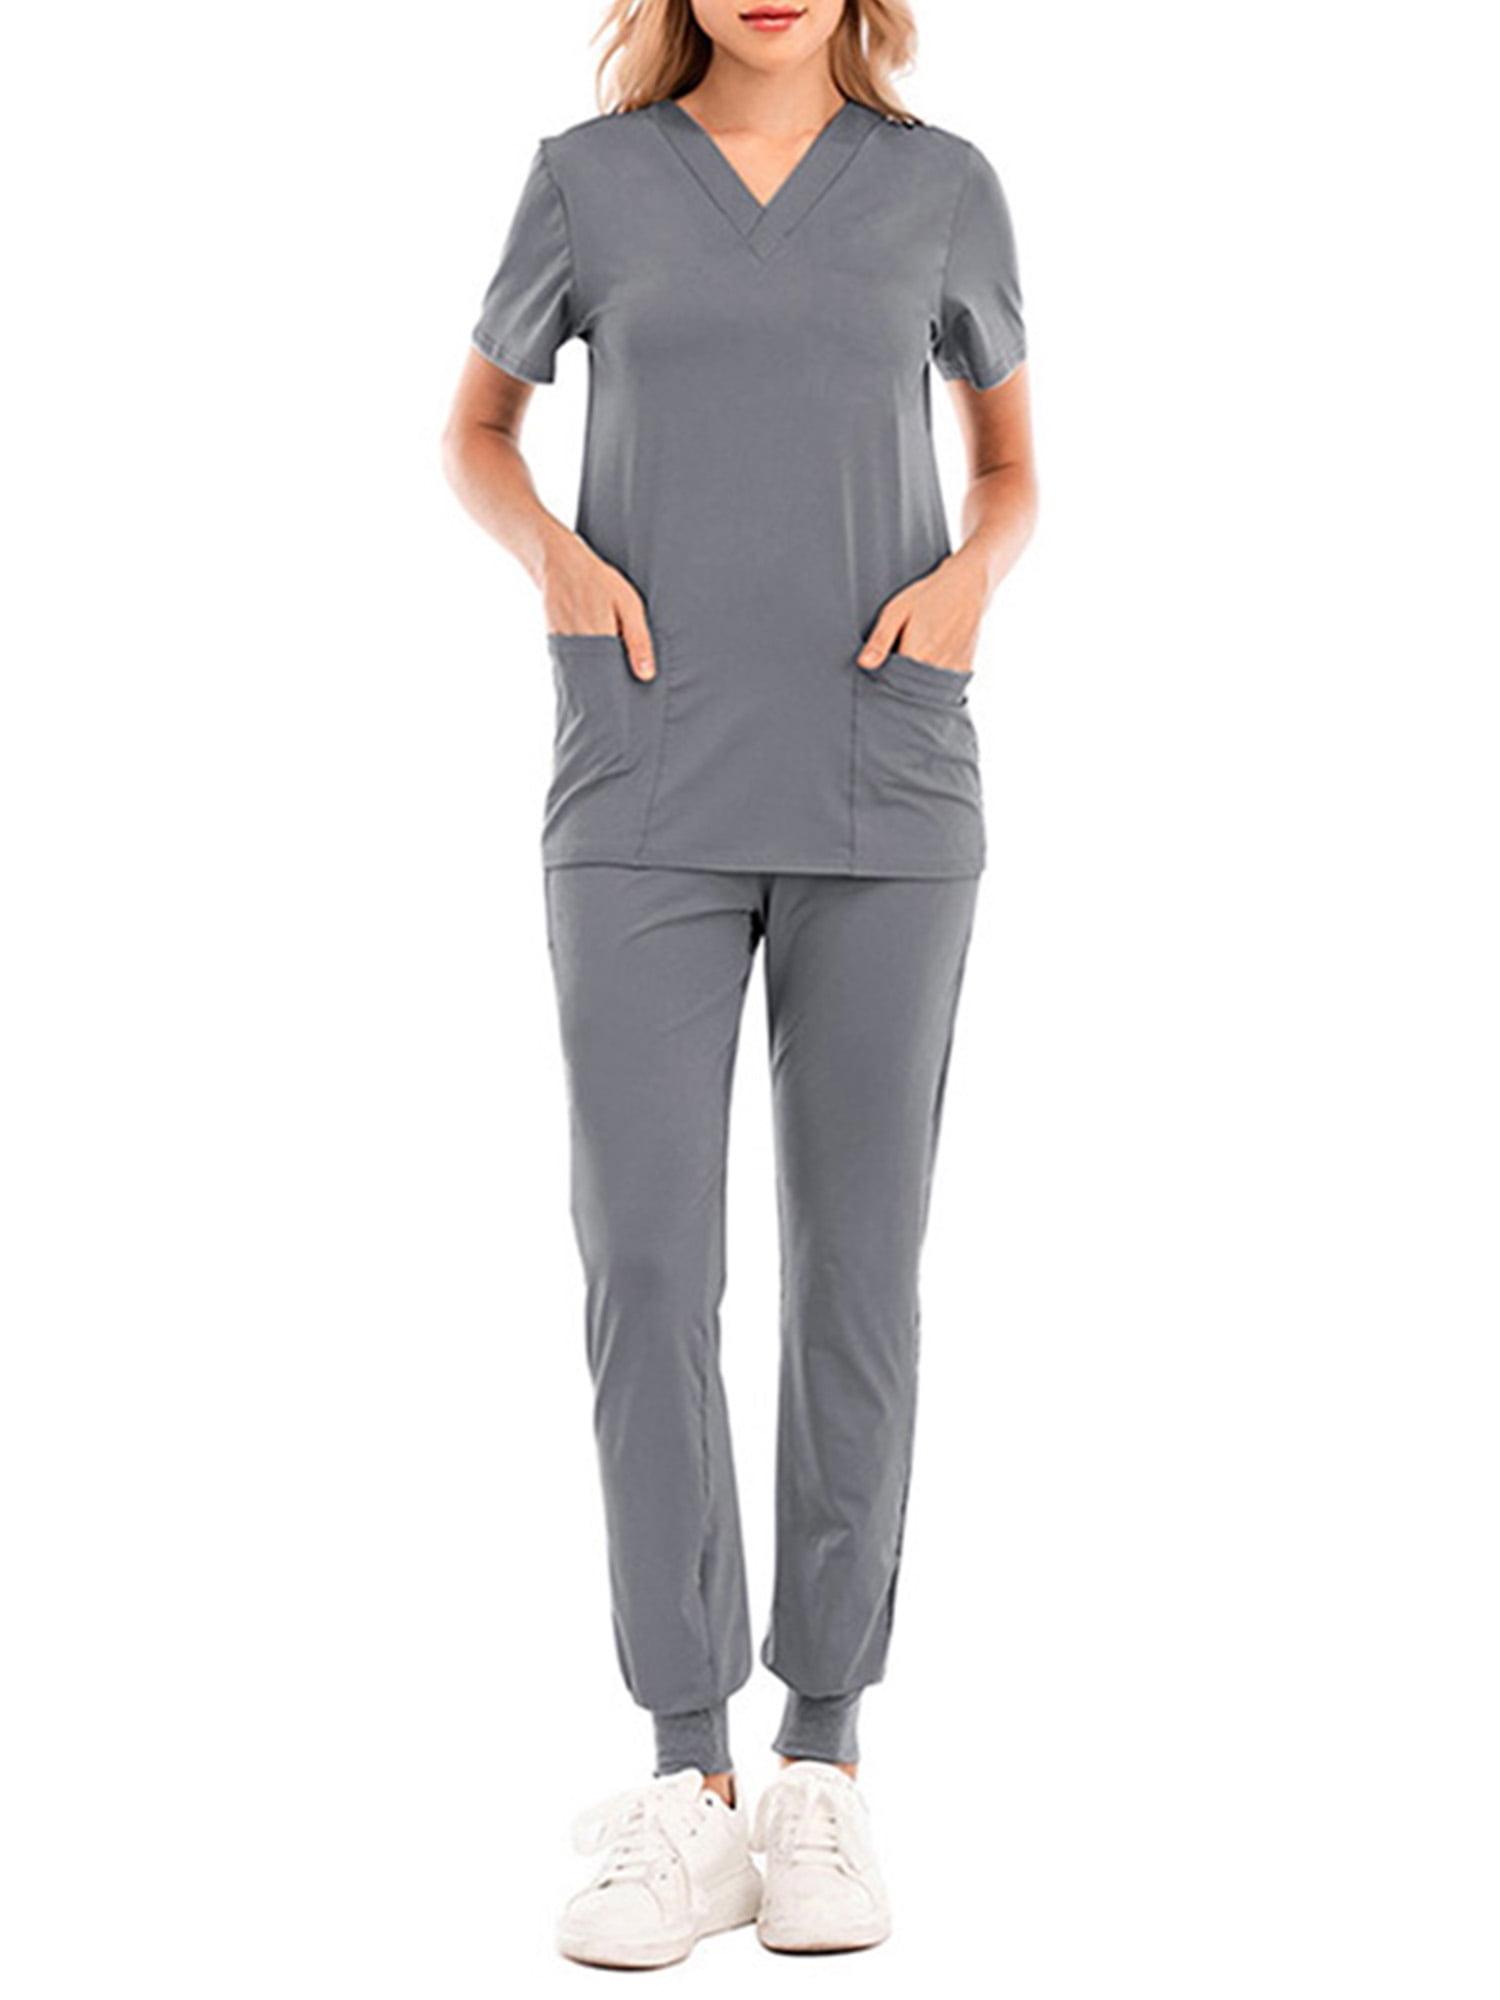 Rejlun Ladies Scrubs Set Solid Color Medical V Neck Scrub Tops+pants Plain  Suit Comfy Doctors Top Sky Blue XL 